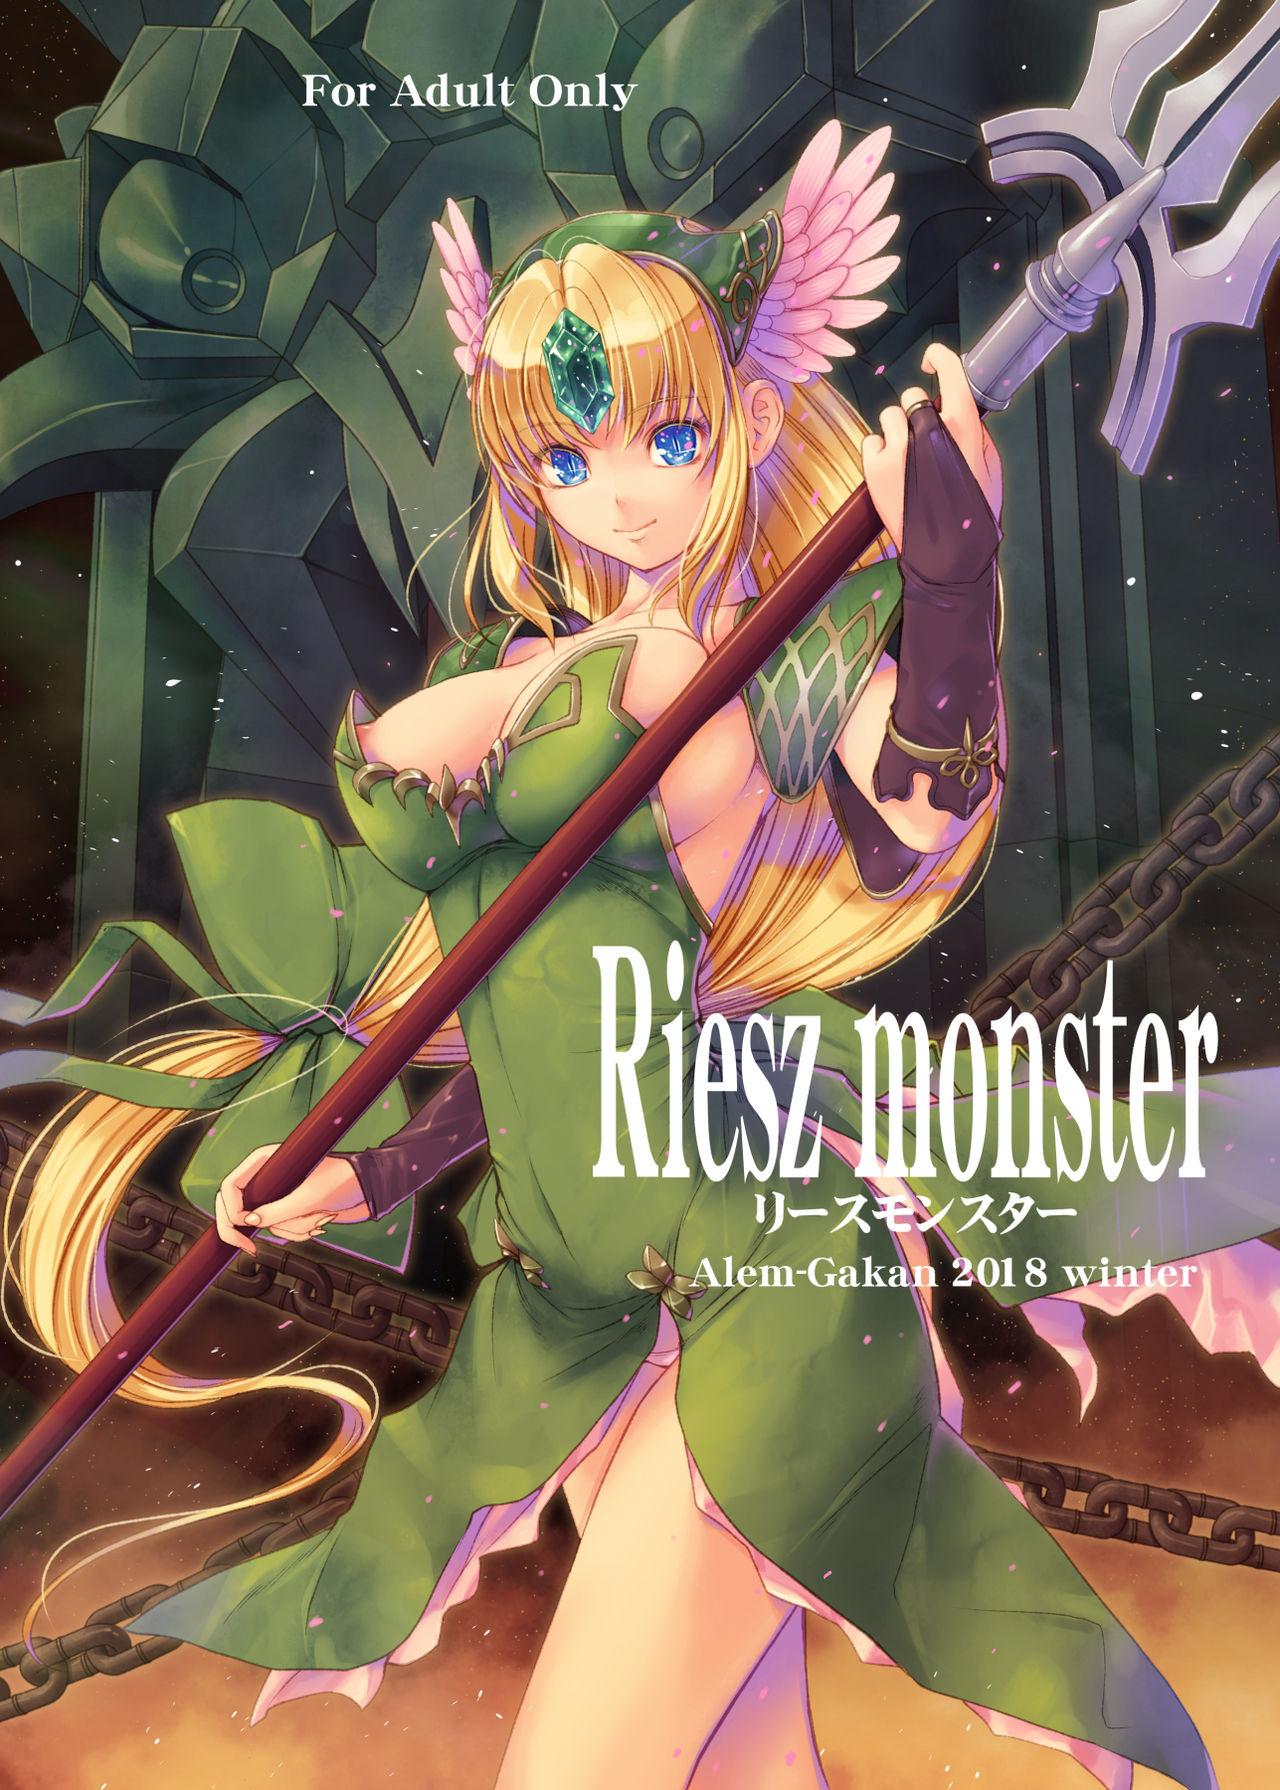 Solo Female Riesz monster - Seiken densetsu 3 Culazo - Picture 1